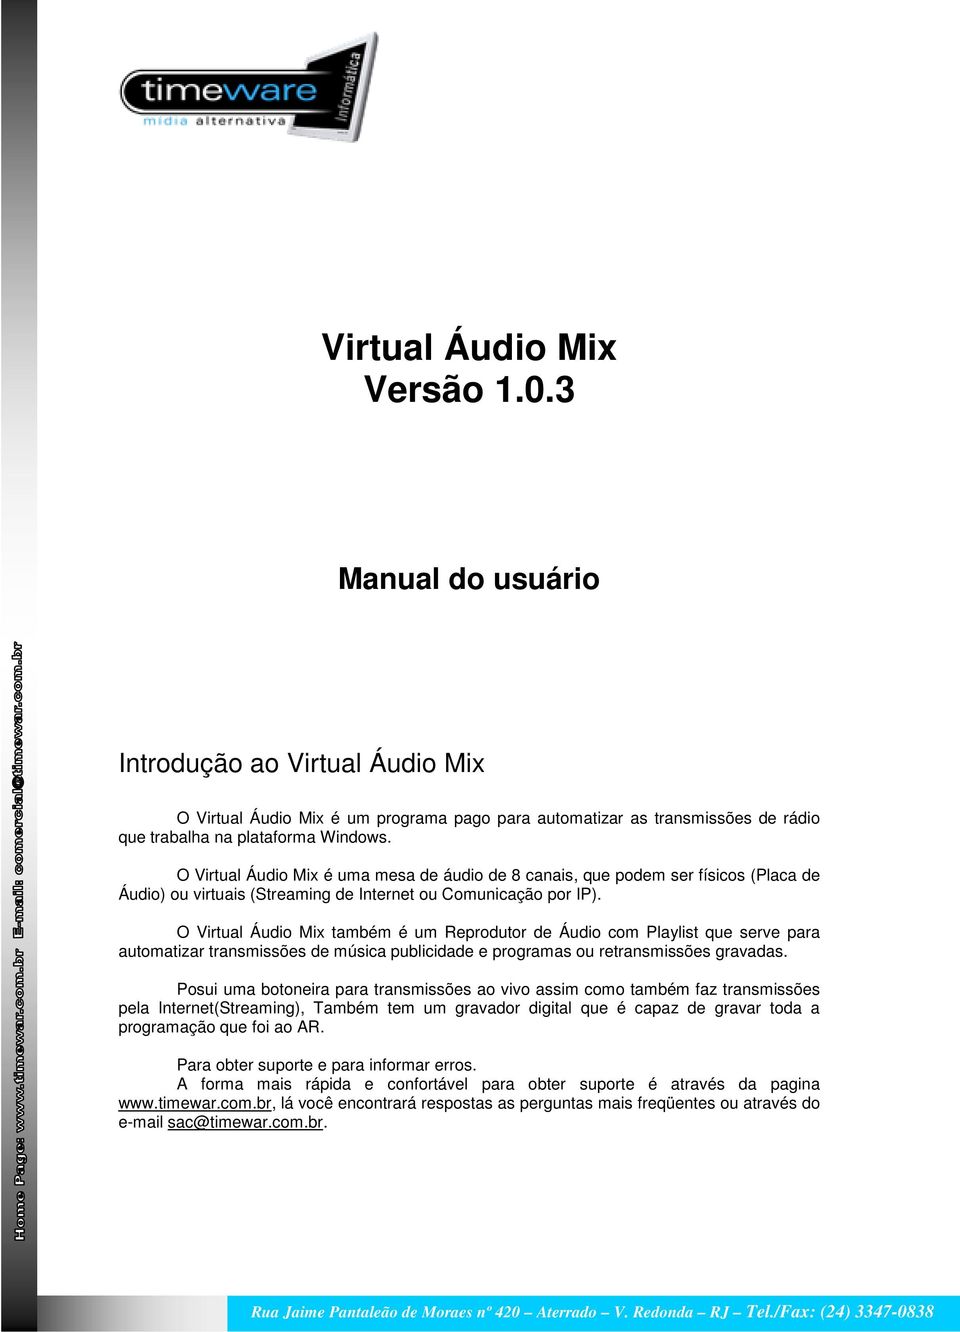 O Virtual Áudio Mix também é um Reprodutor de Áudio com Playlist que serve para automatizar transmissões de música publicidade e programas ou retransmissões gravadas.